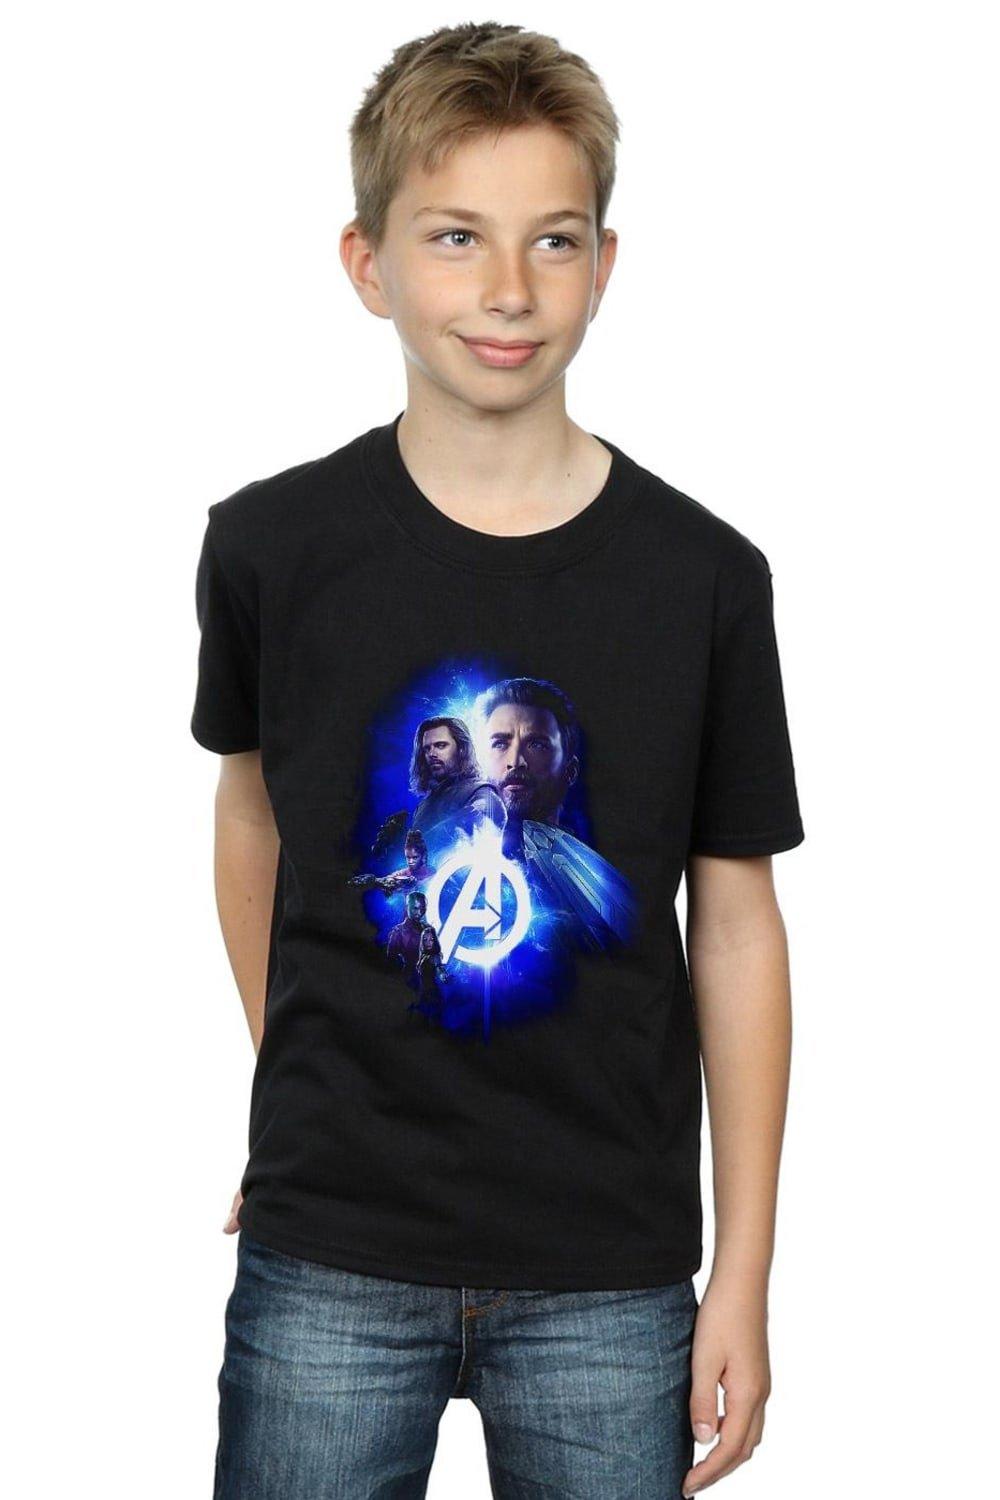 Avengers Infinity War Cap Bucky Team Up T-Shirt